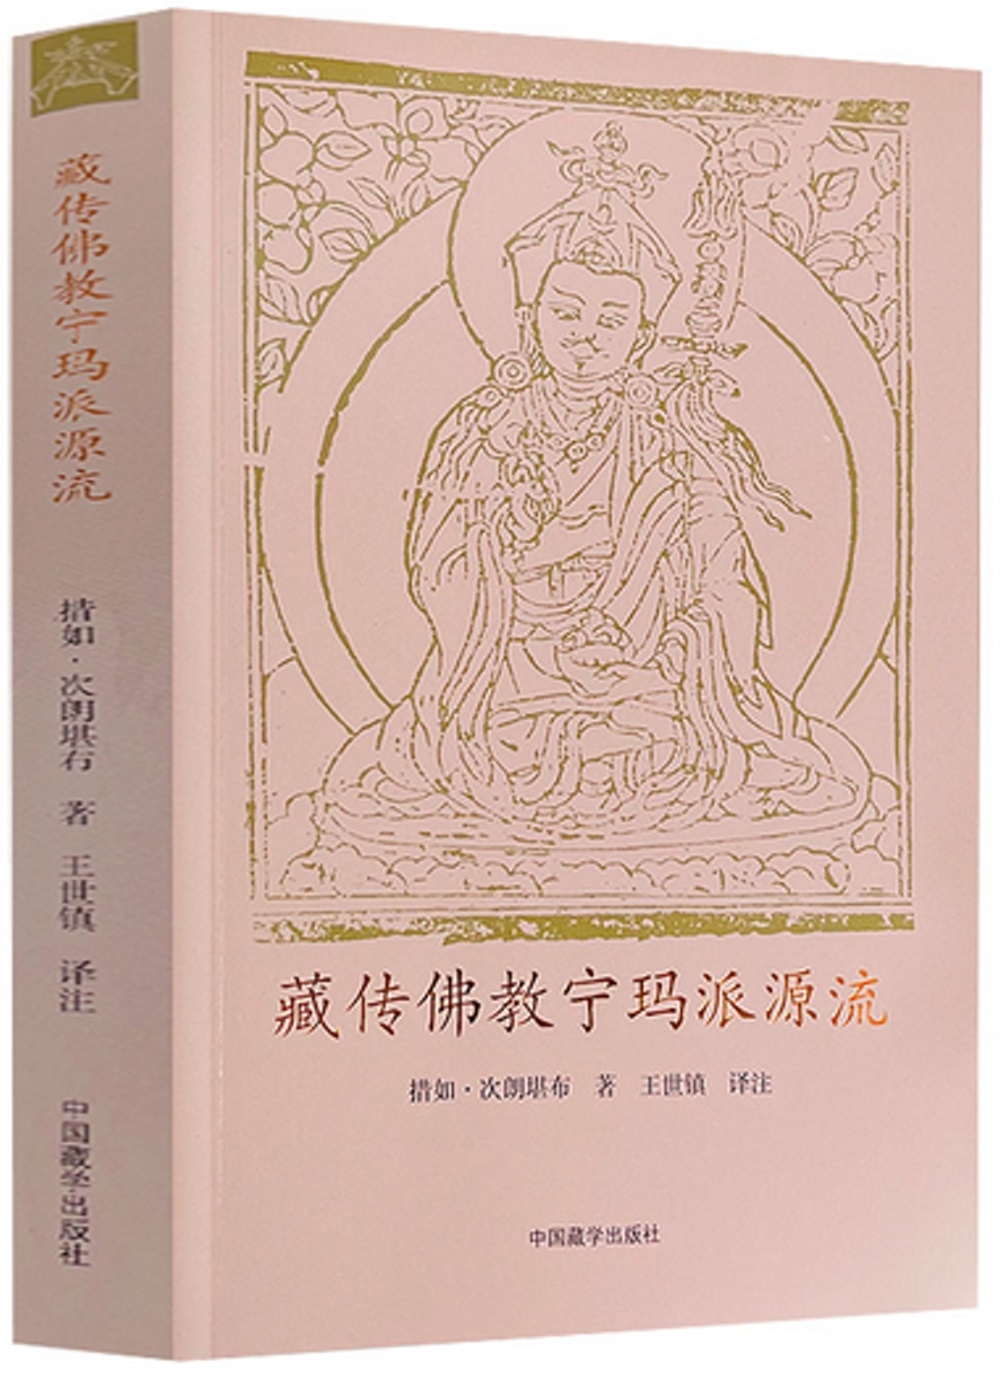 藏傳佛教寧瑪派源流